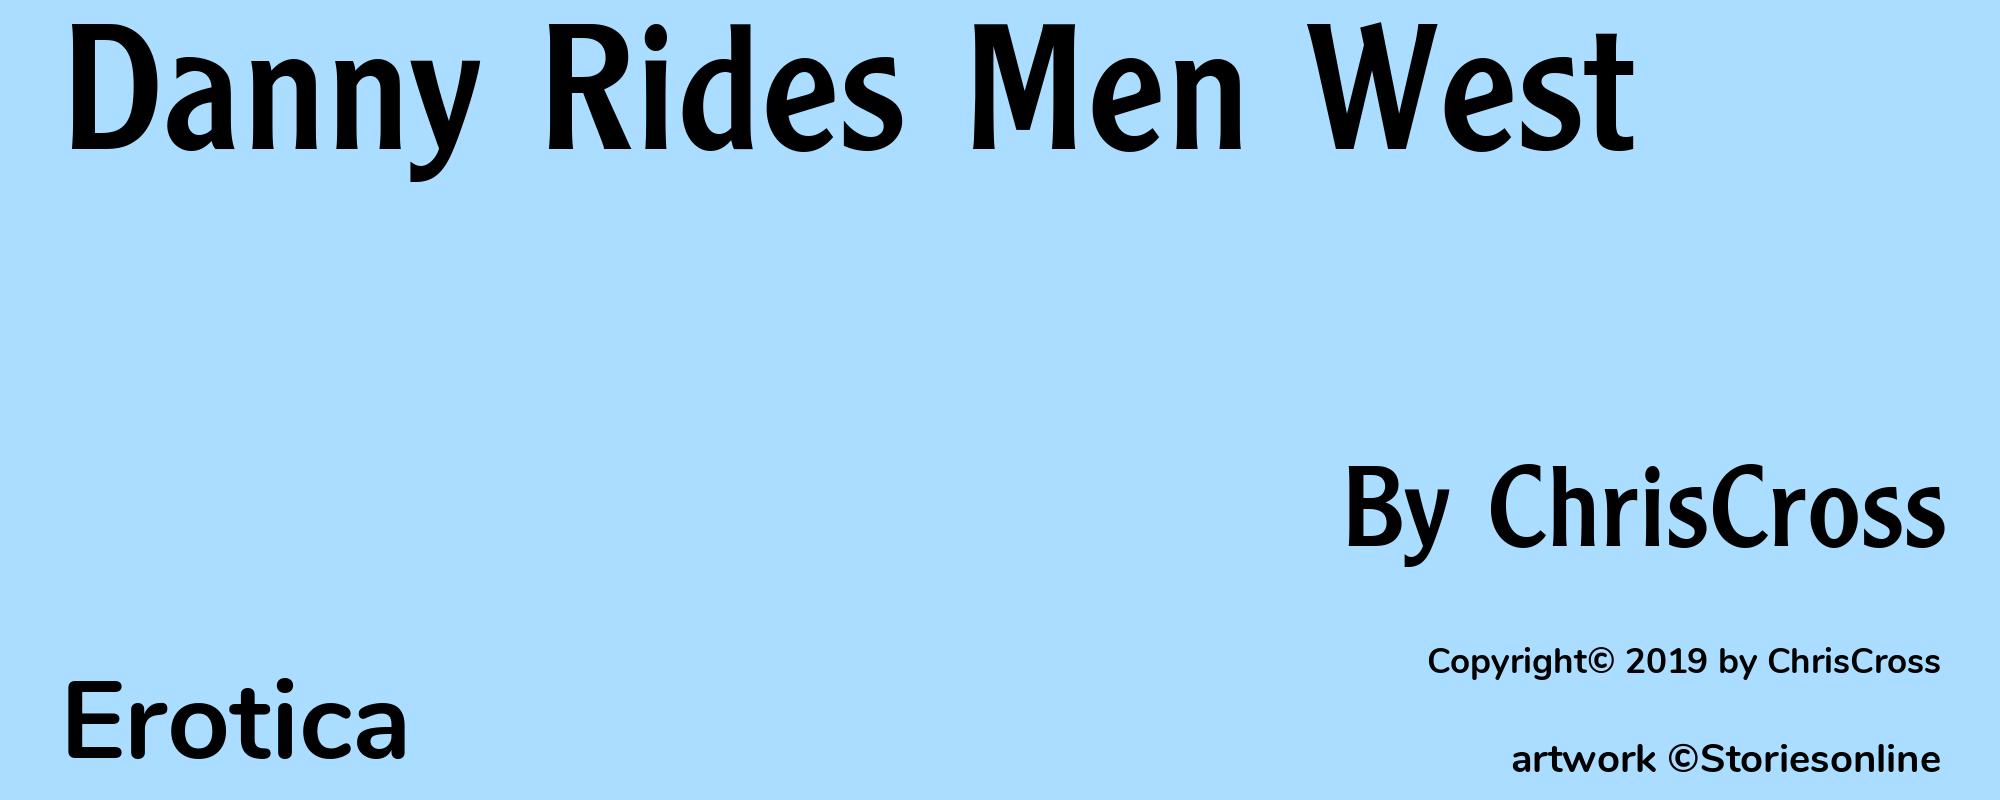 Danny Rides Men West - Cover